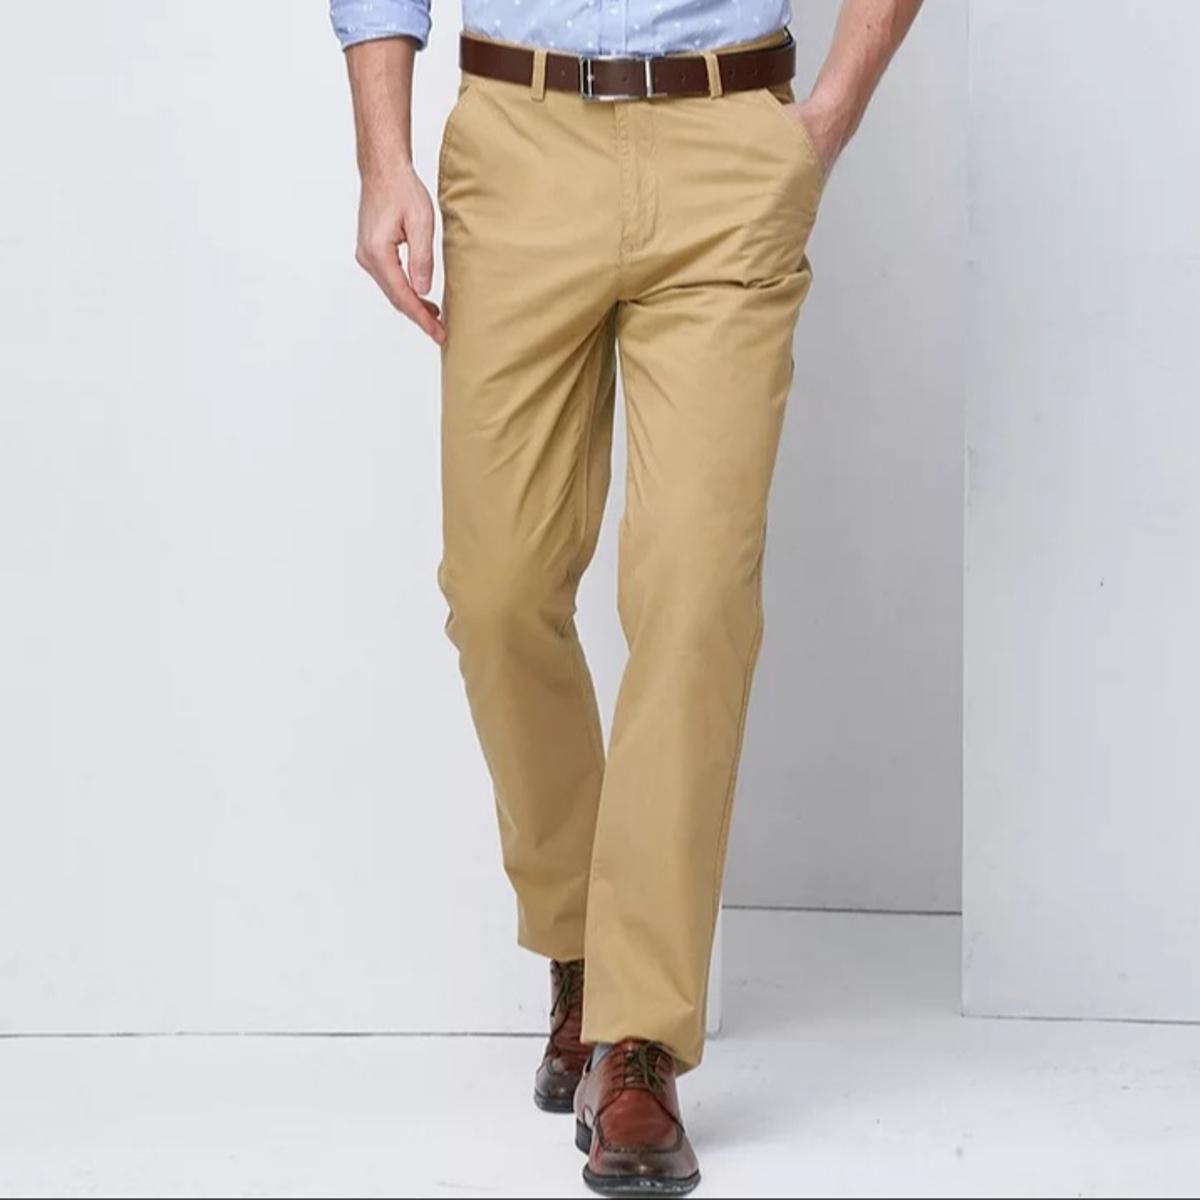 Khaki Cotton Pants - He Spoke Style